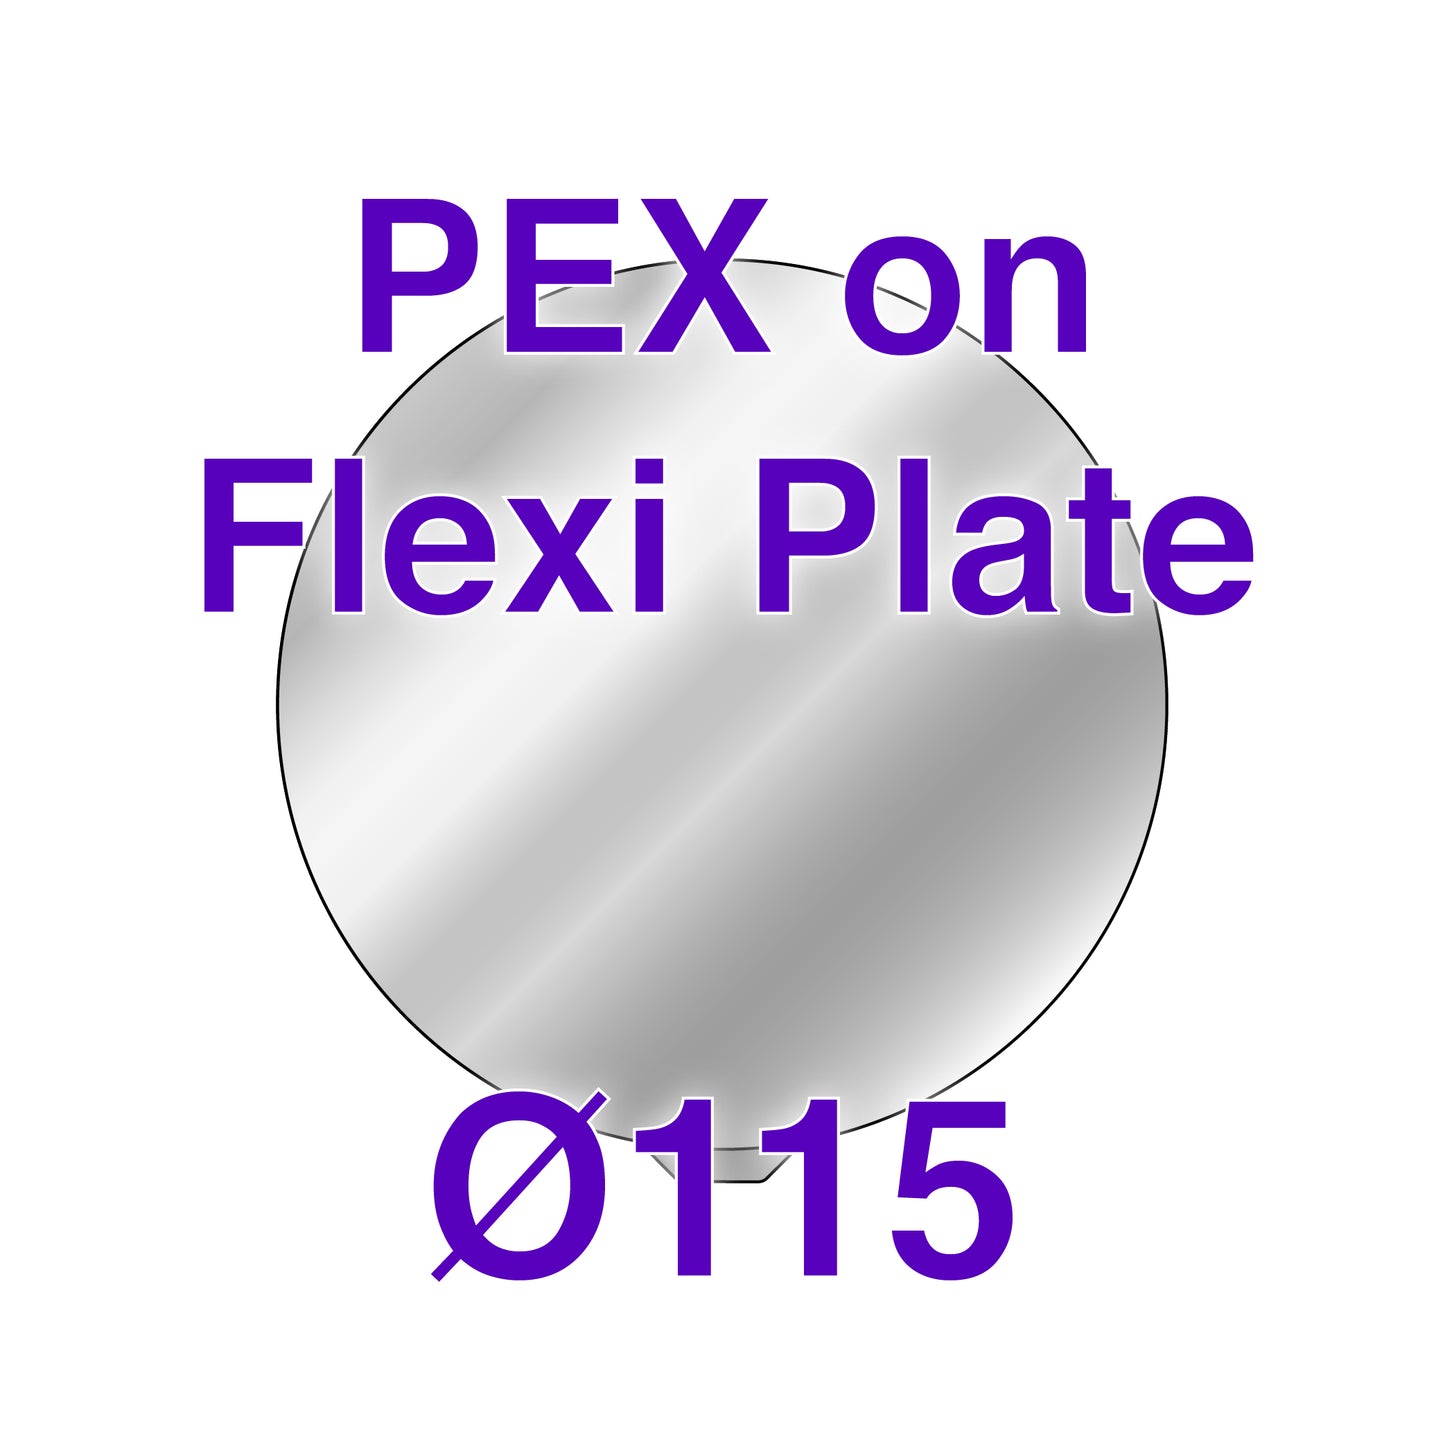 Flexi Plate with PEX - MonoPrice Mini Delta -  Ø115